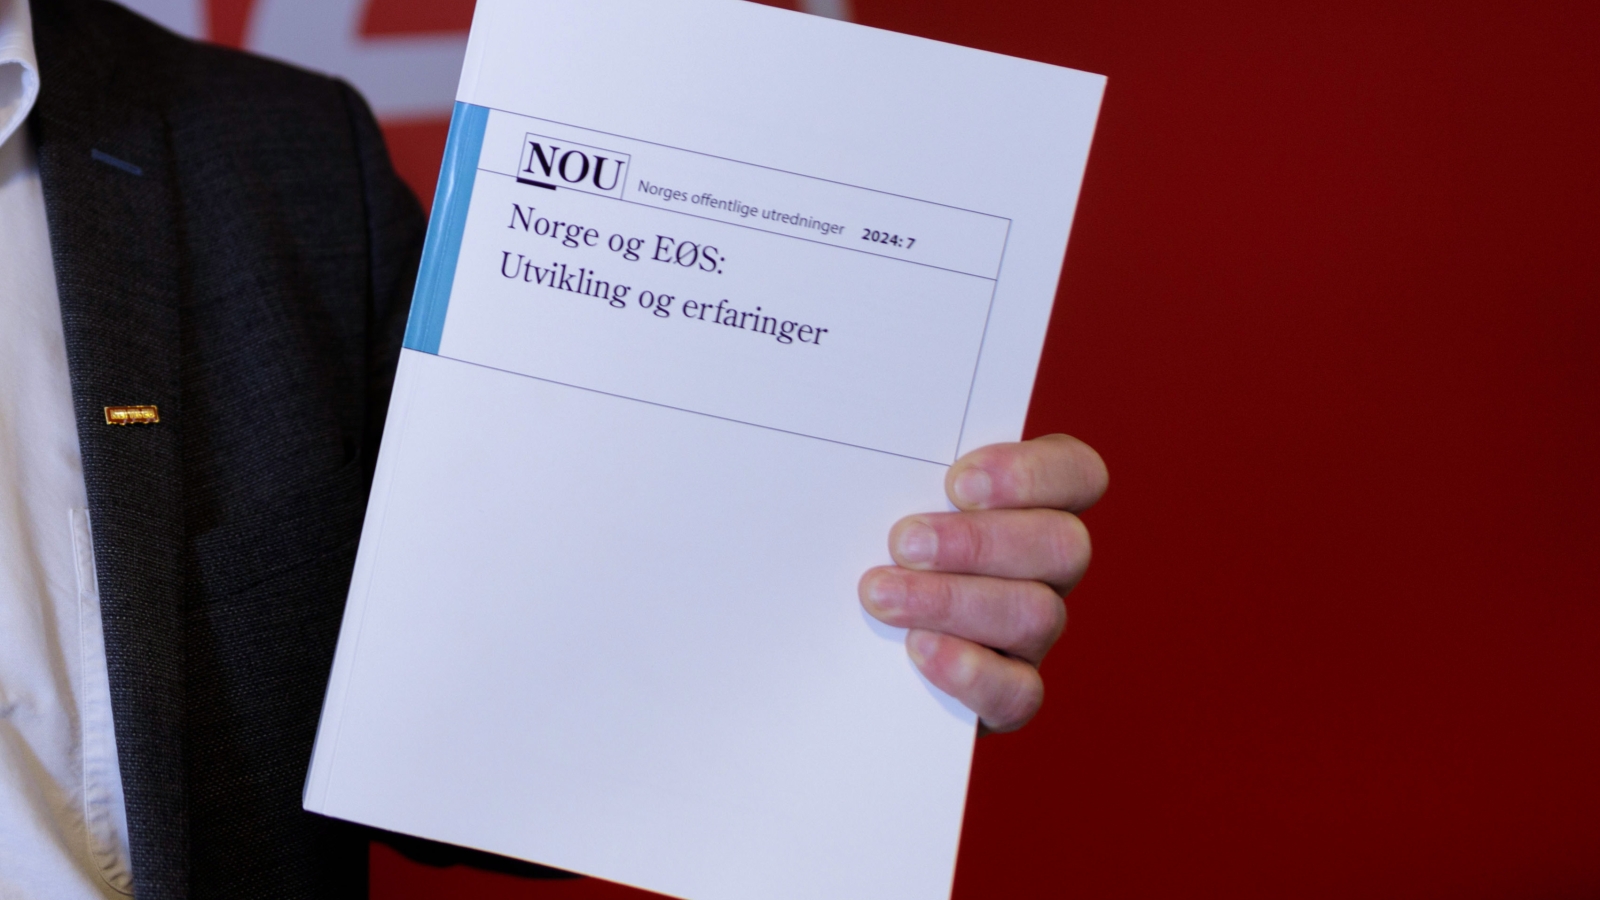 NOU 2024:7 Norge og EØS: Utvikling og erfaringer ble overlevert Utenriksministeren 11. april 2024. 